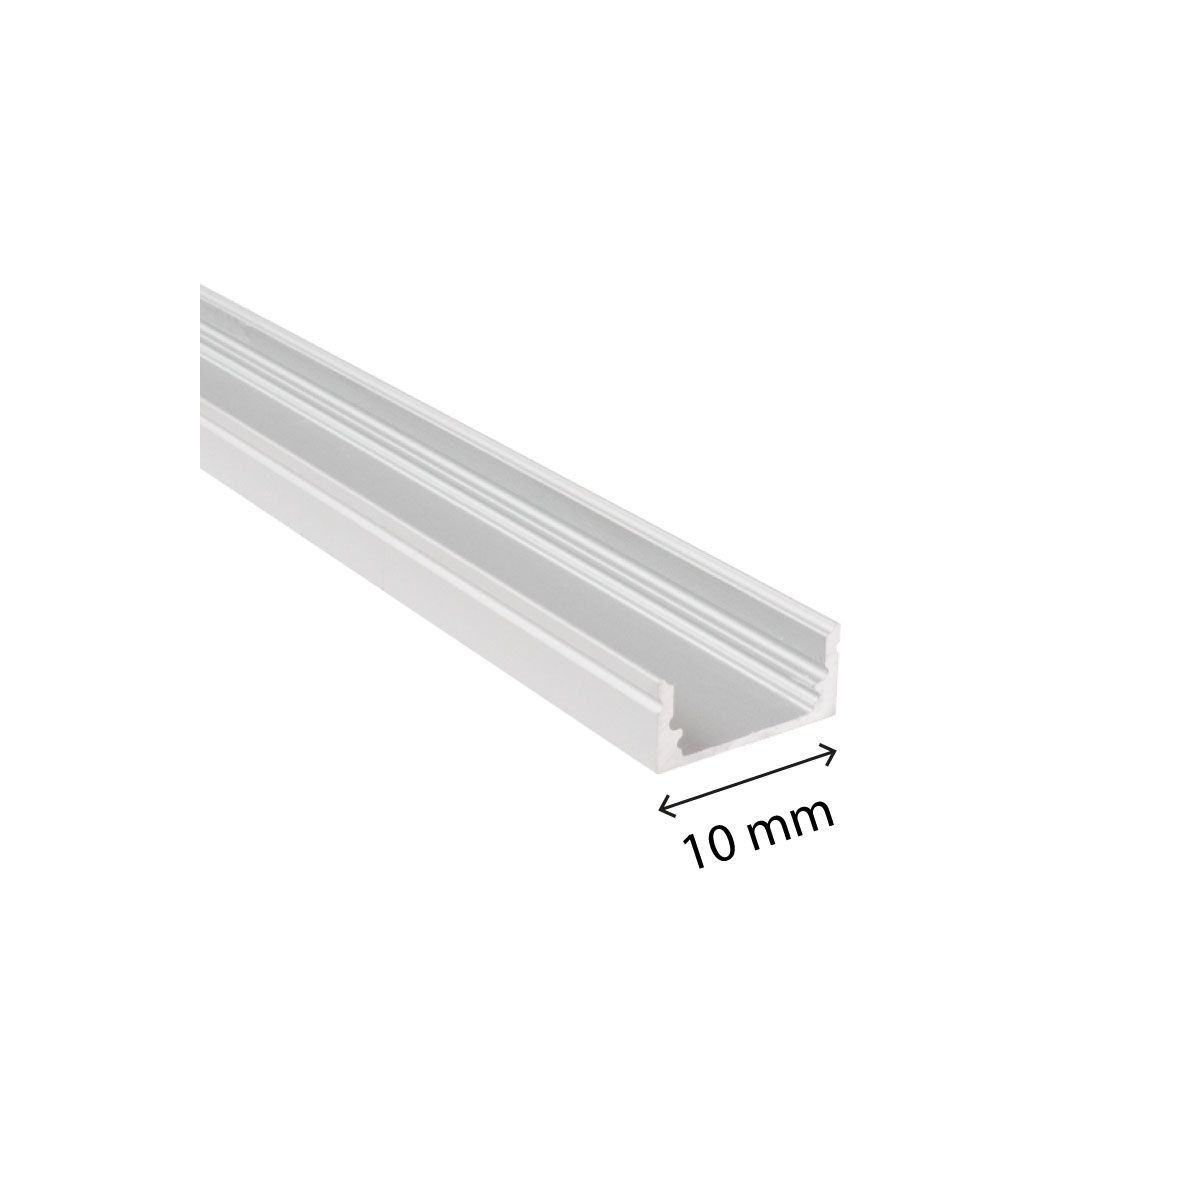 LOT 10 - Profil en ALUMINIUM pour ruban LED Bouchons PVC transparent 2M x  18mm x 12mm - Digilamp